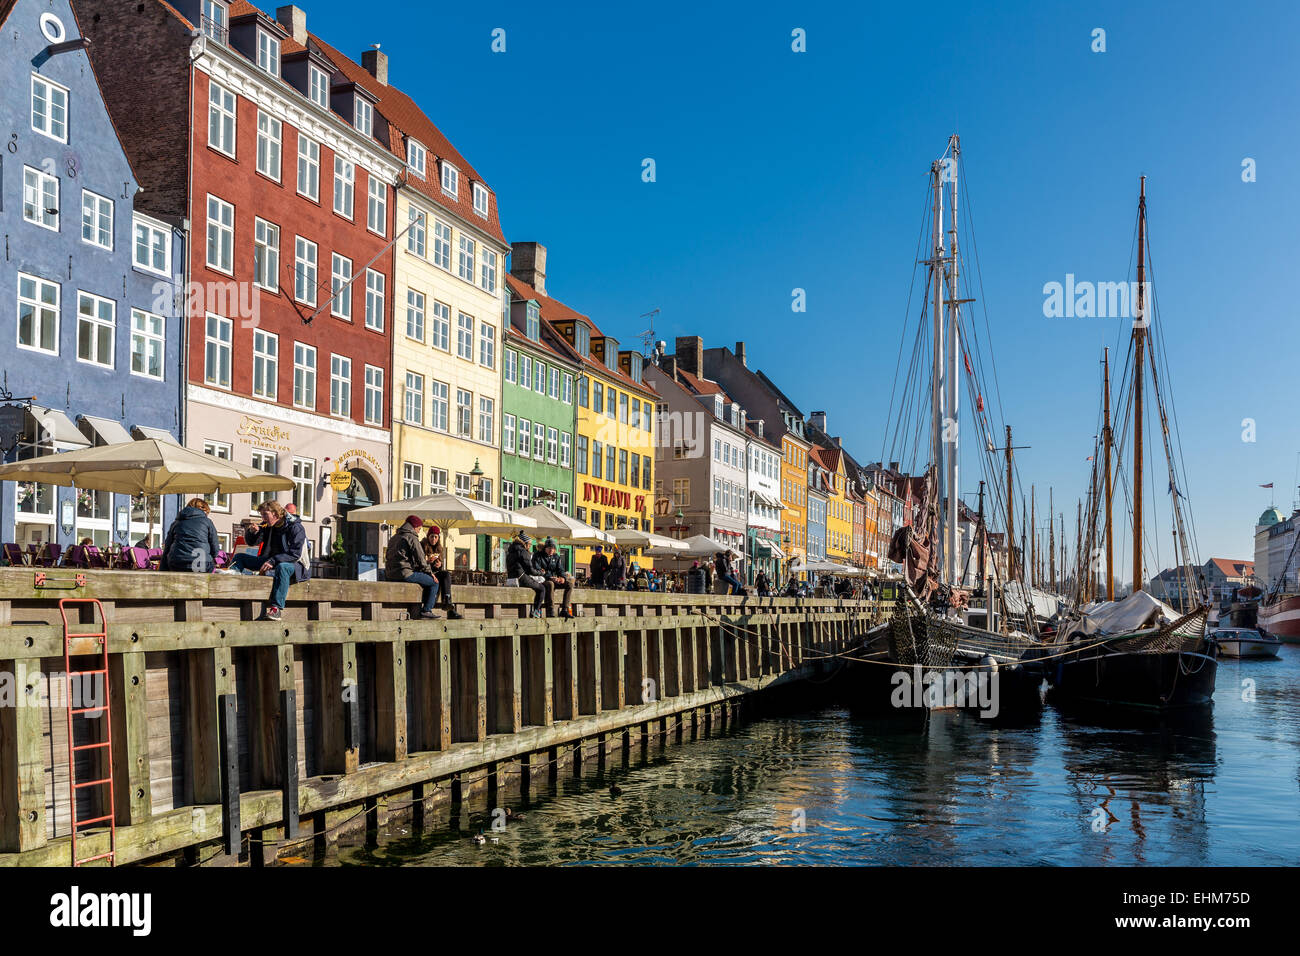 Canal de Nyhavn, Nyhavn, Copenhague, Danemark Banque D'Images